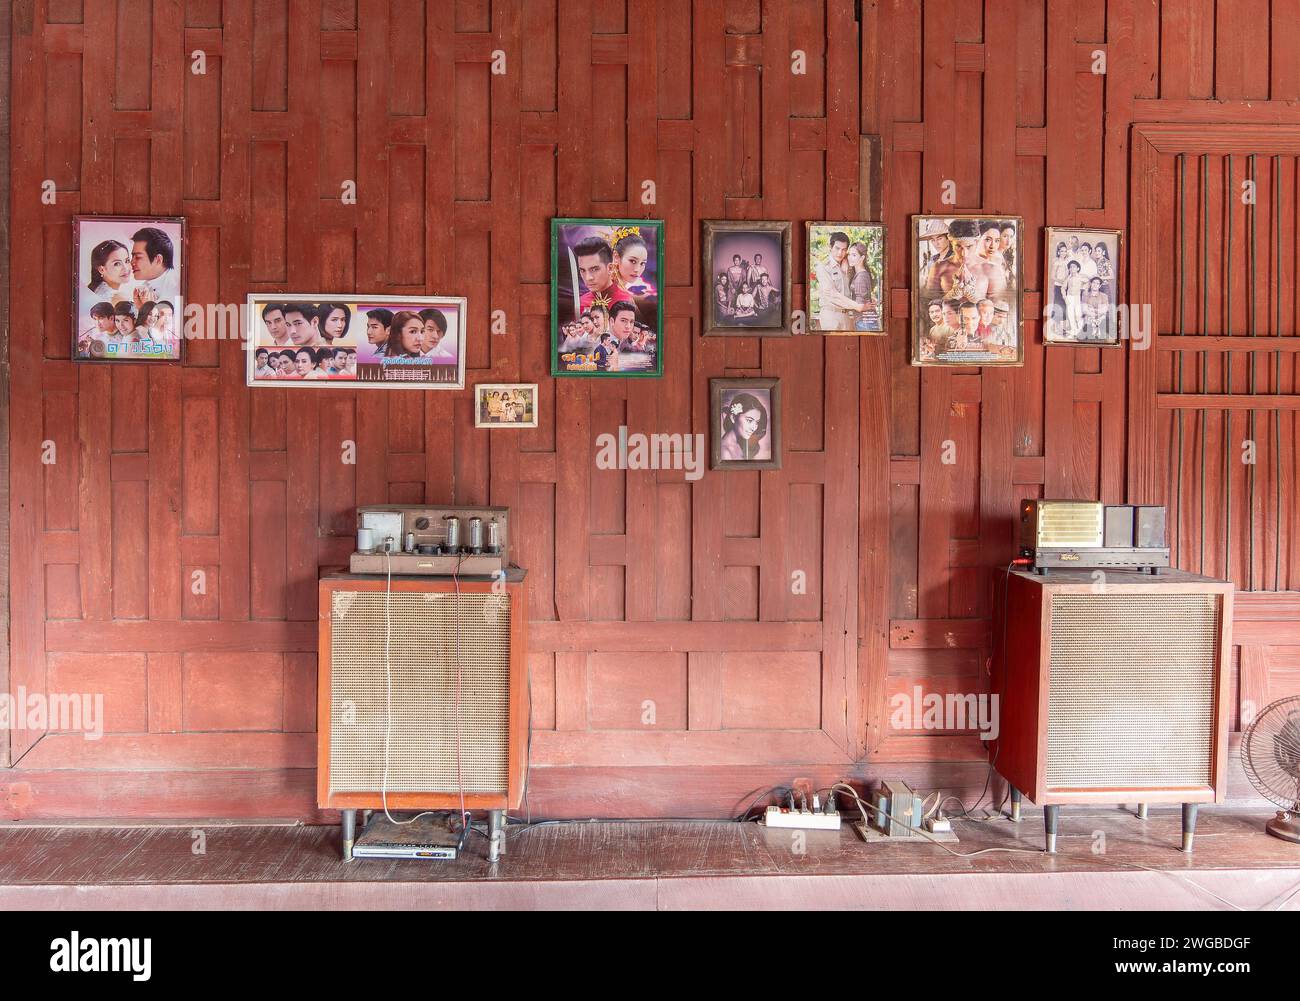 Intérieur de la maison thaïlandaise traditionnelle en bois avec chaîne hi-fi stéréo vintage et photos de célébrités thaïlandaises sur le mur. Banque D'Images